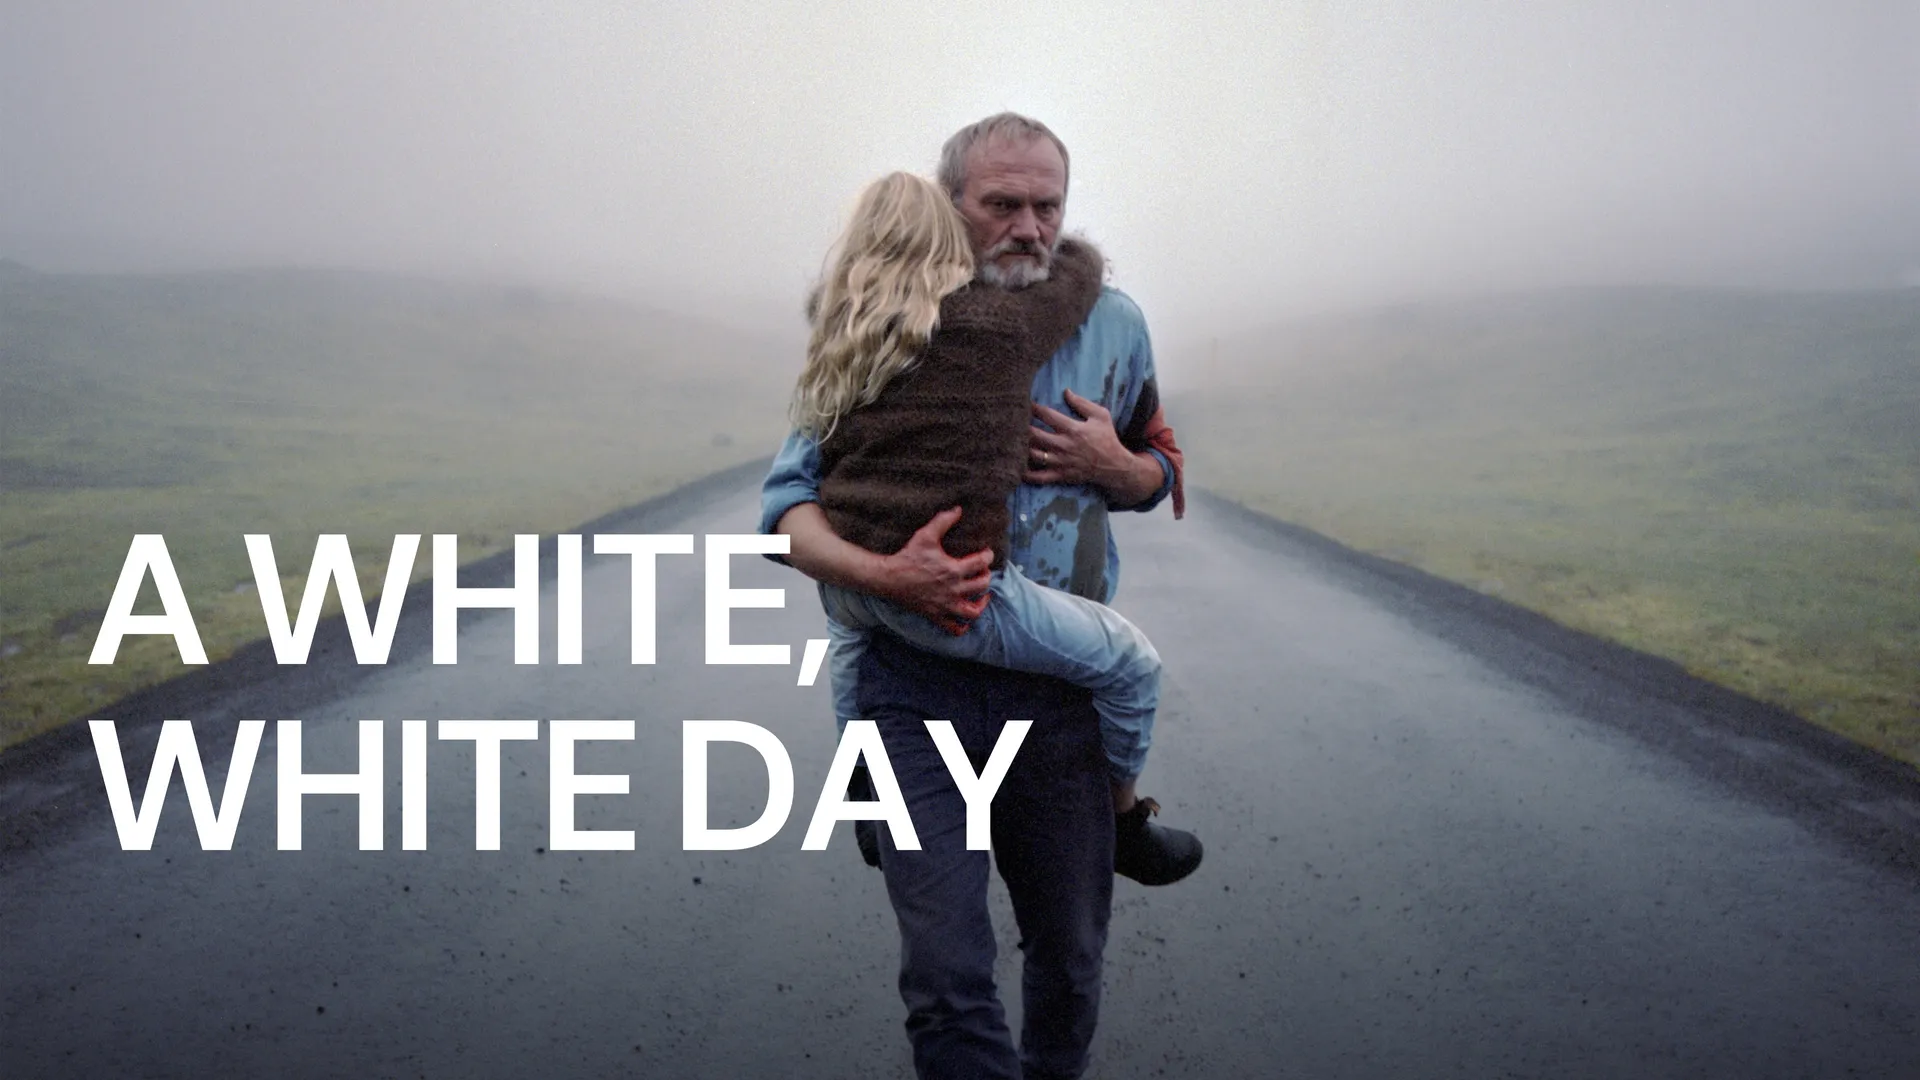 A White, White Day